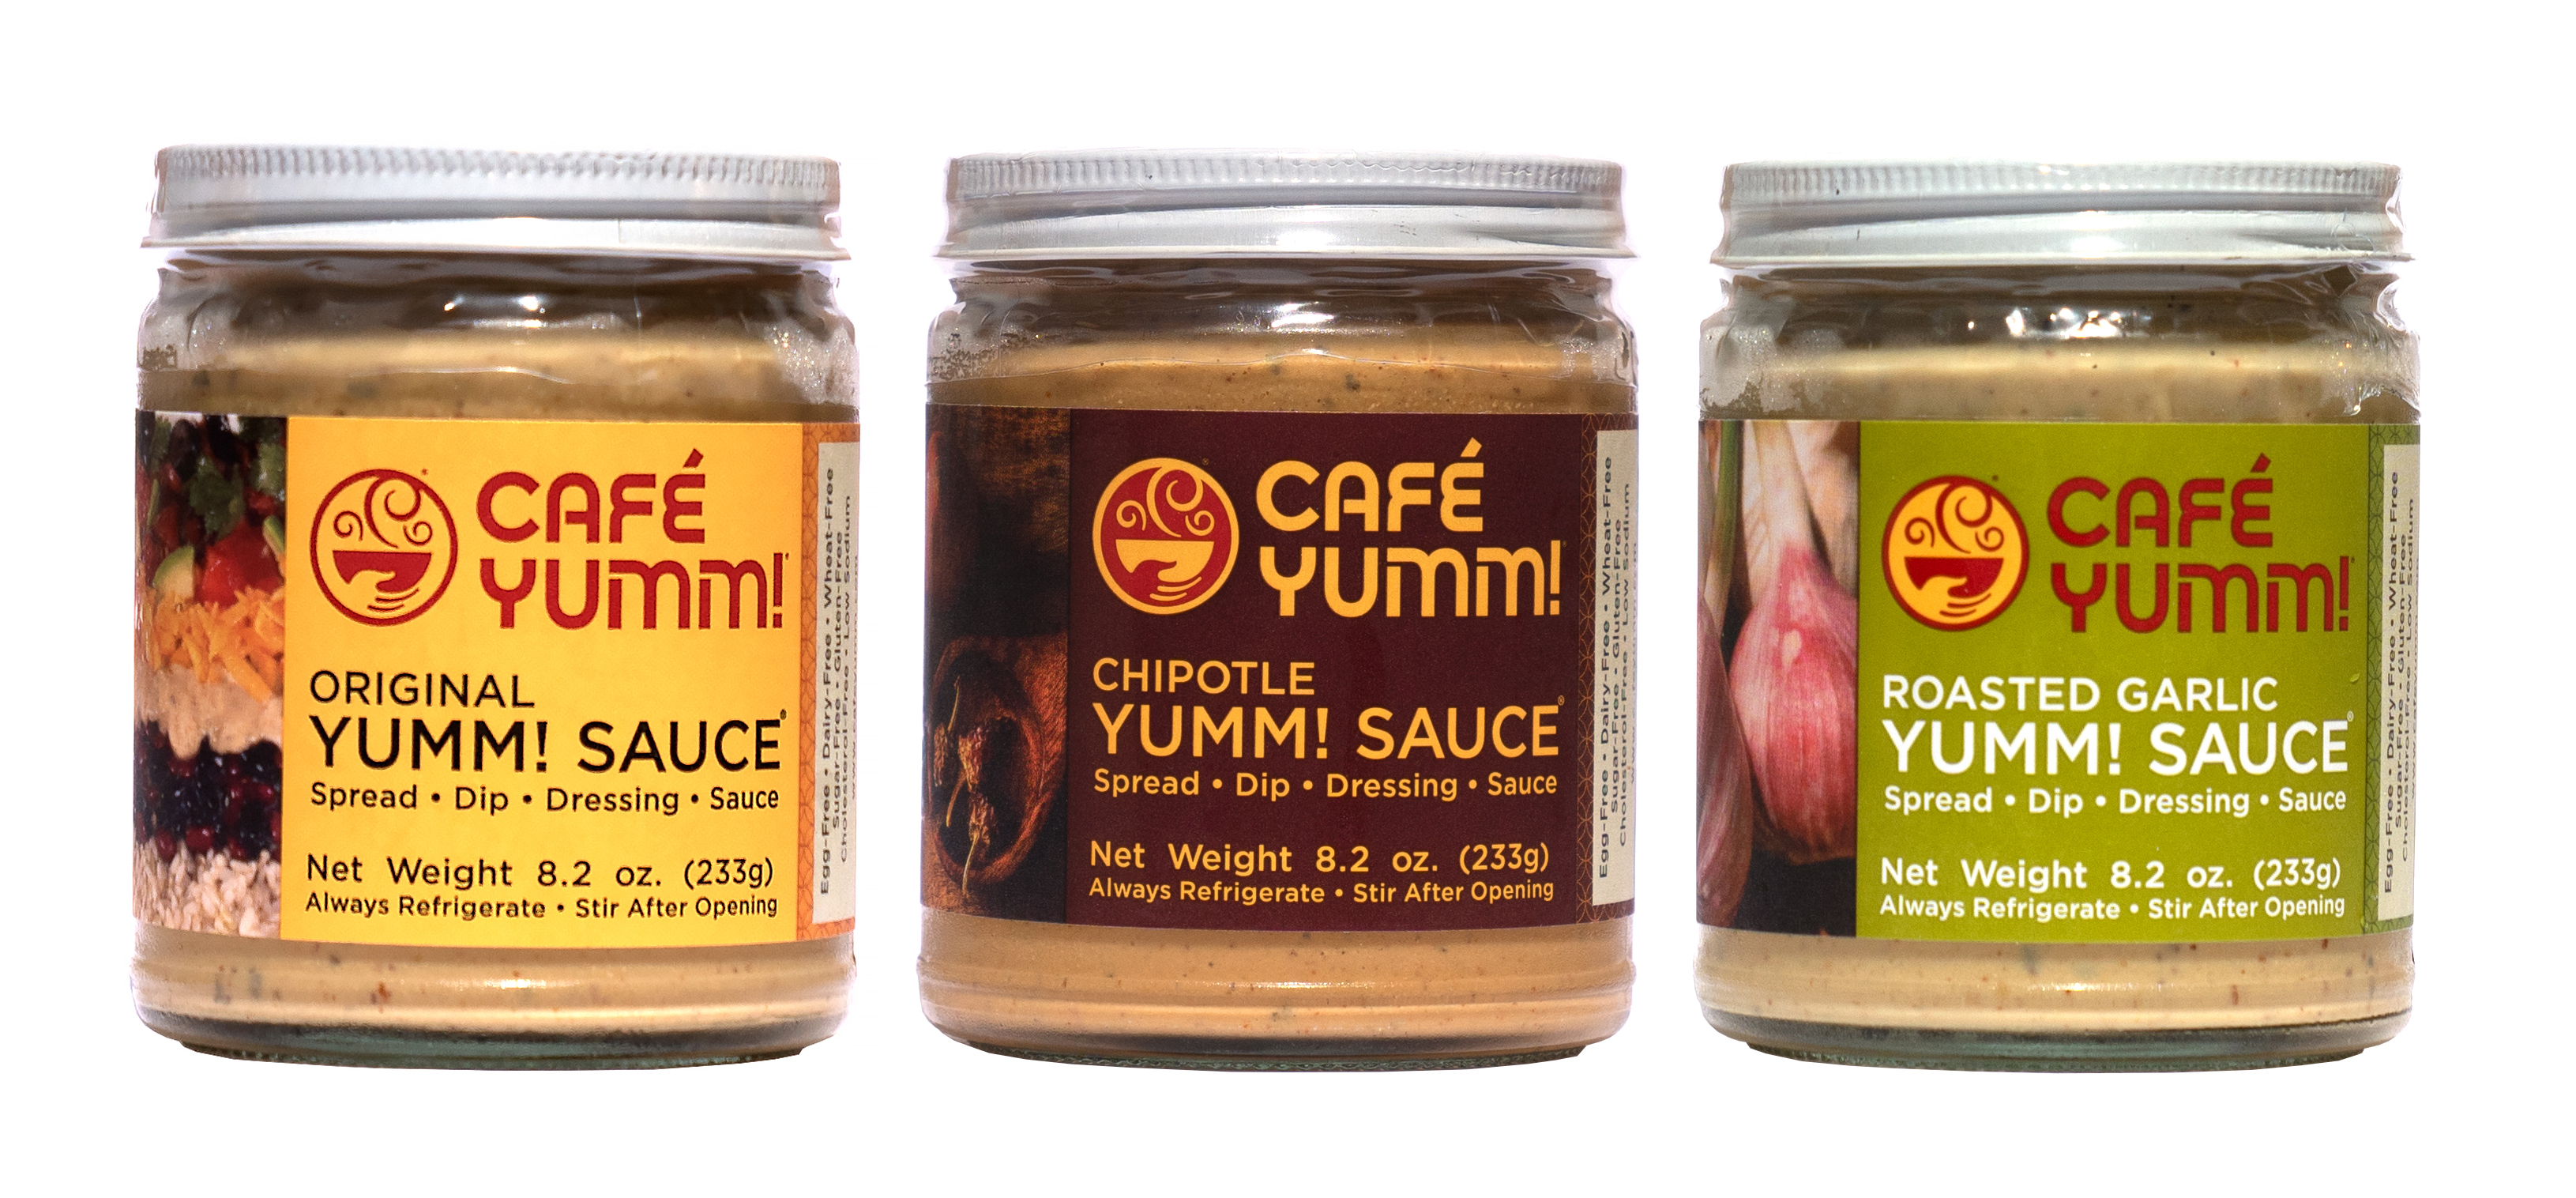 Order Yumm! Sauce® Jar food online from Cafe Yumm! store, Portland on bringmethat.com